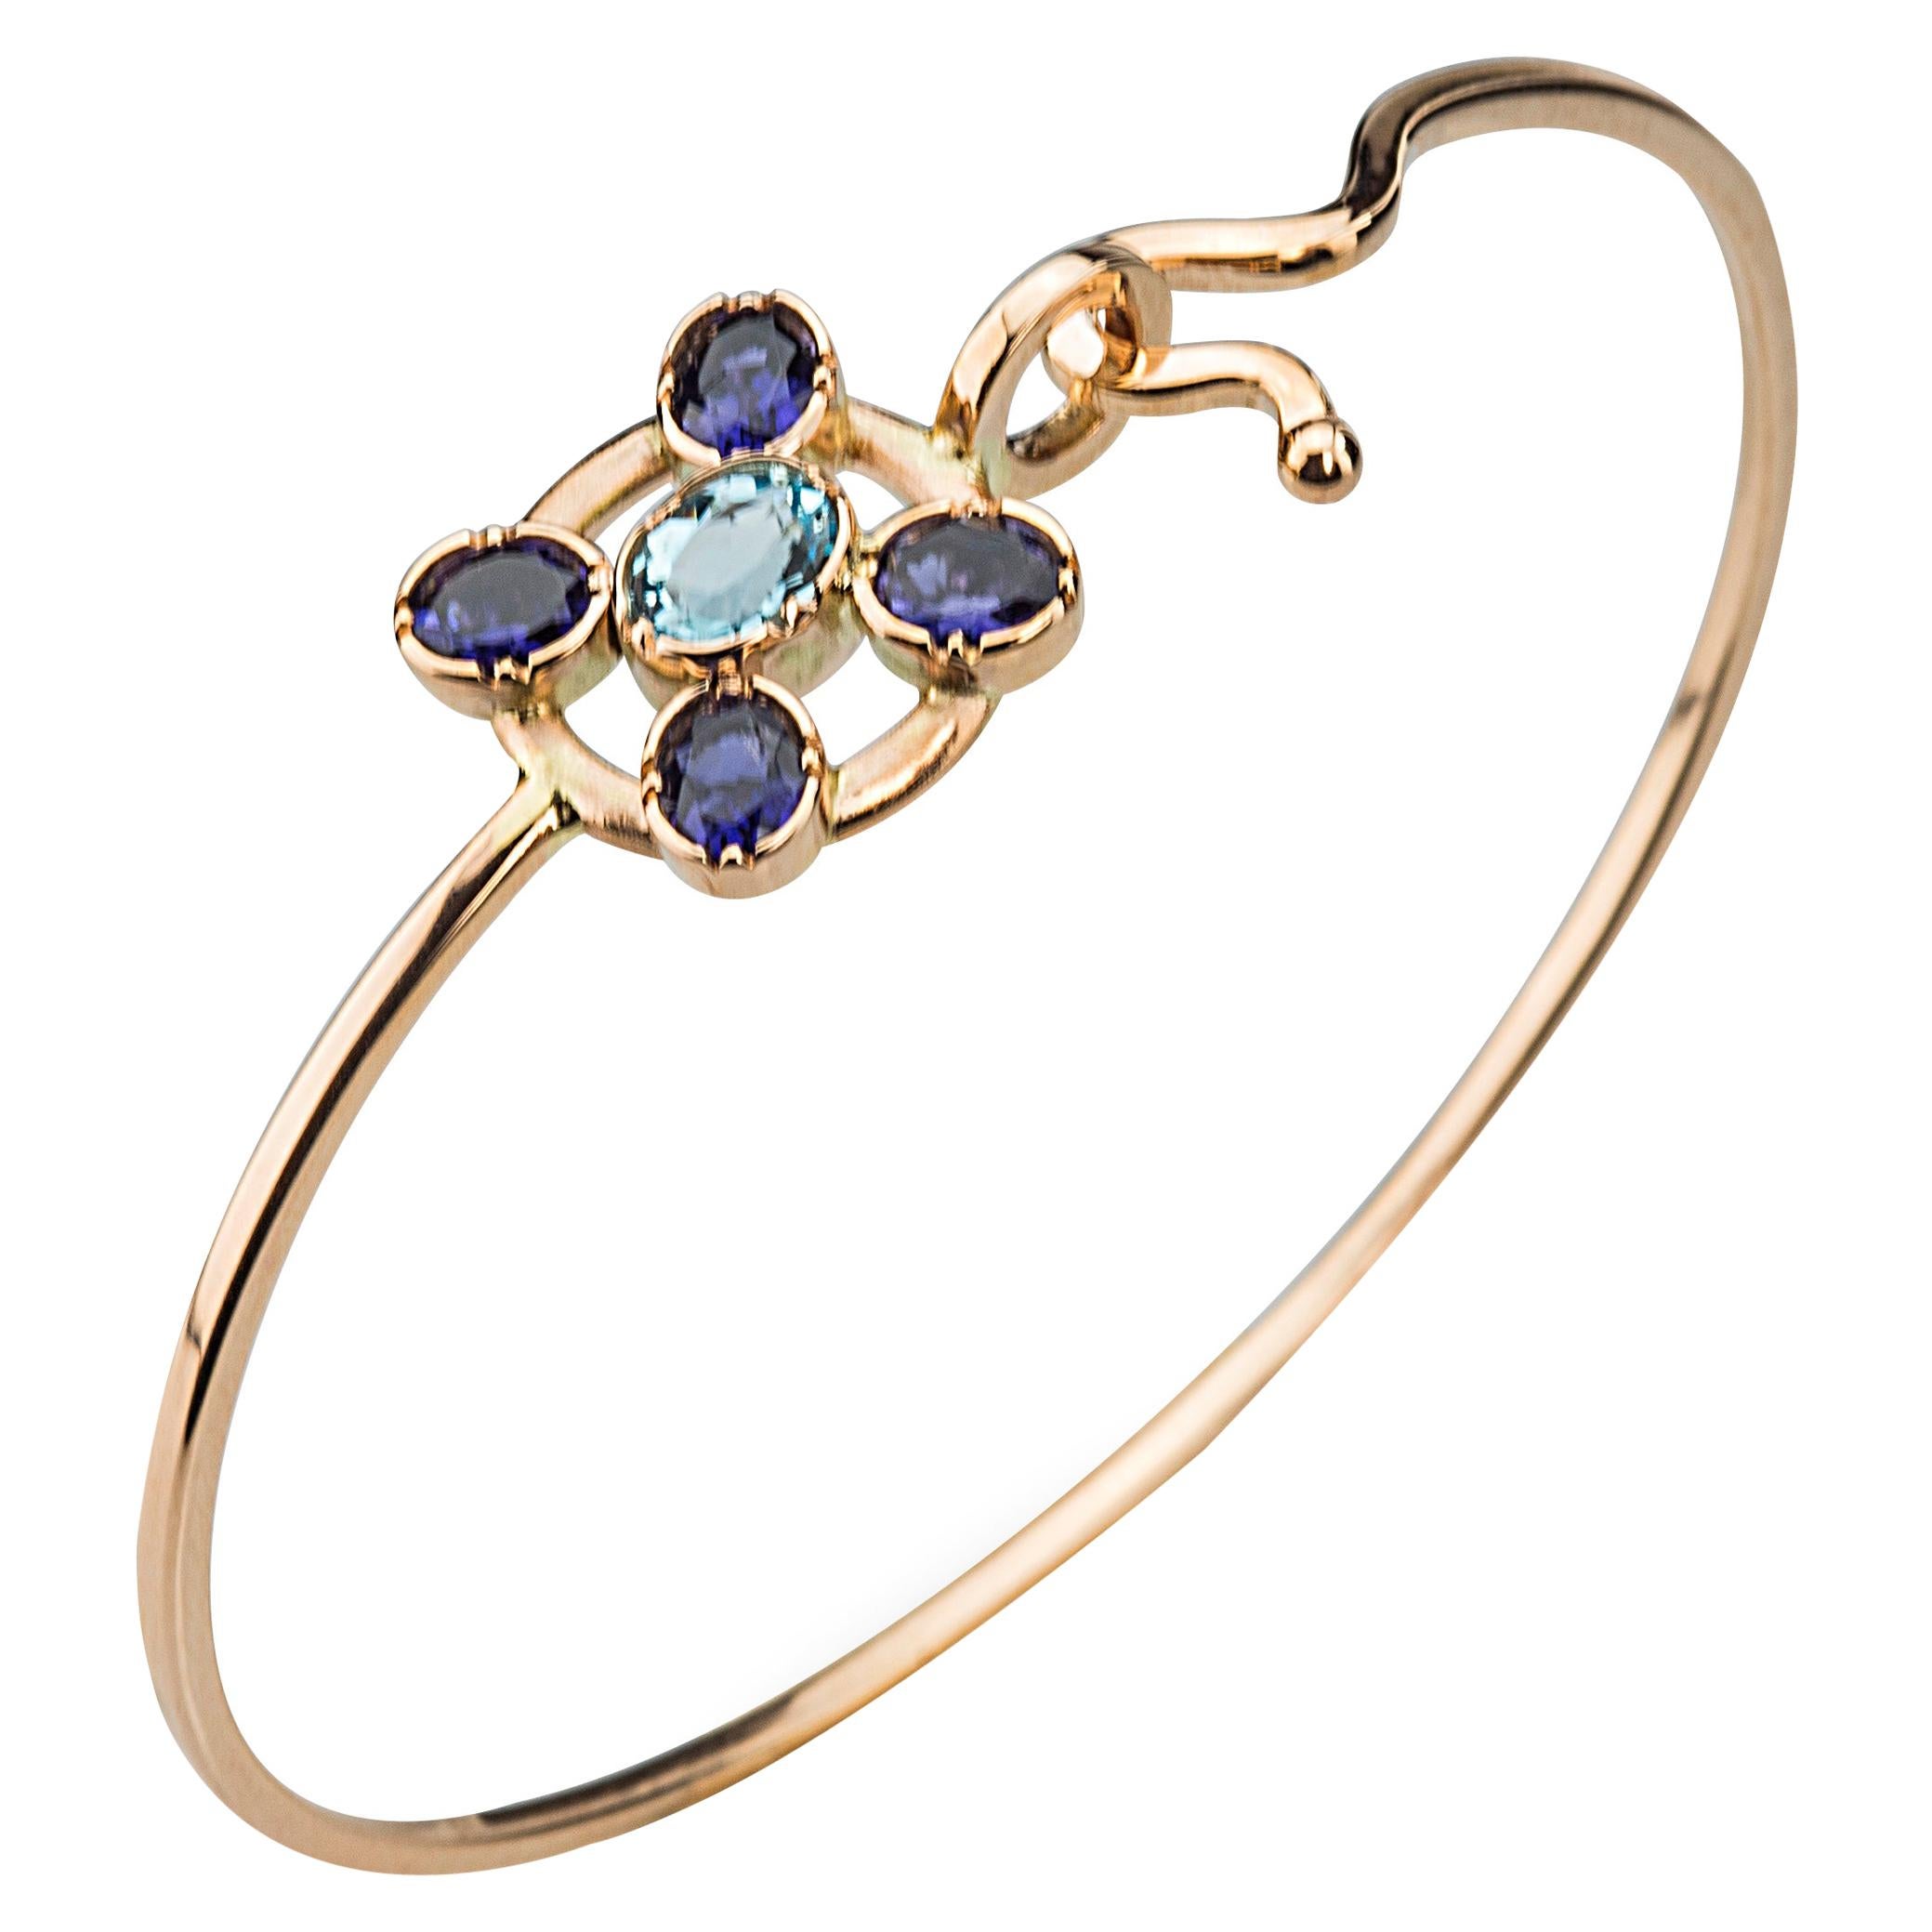  18K Gold Blue Sapphires Aquamarine Twisted Bangle Modern Flower Design Bracelet For Sale